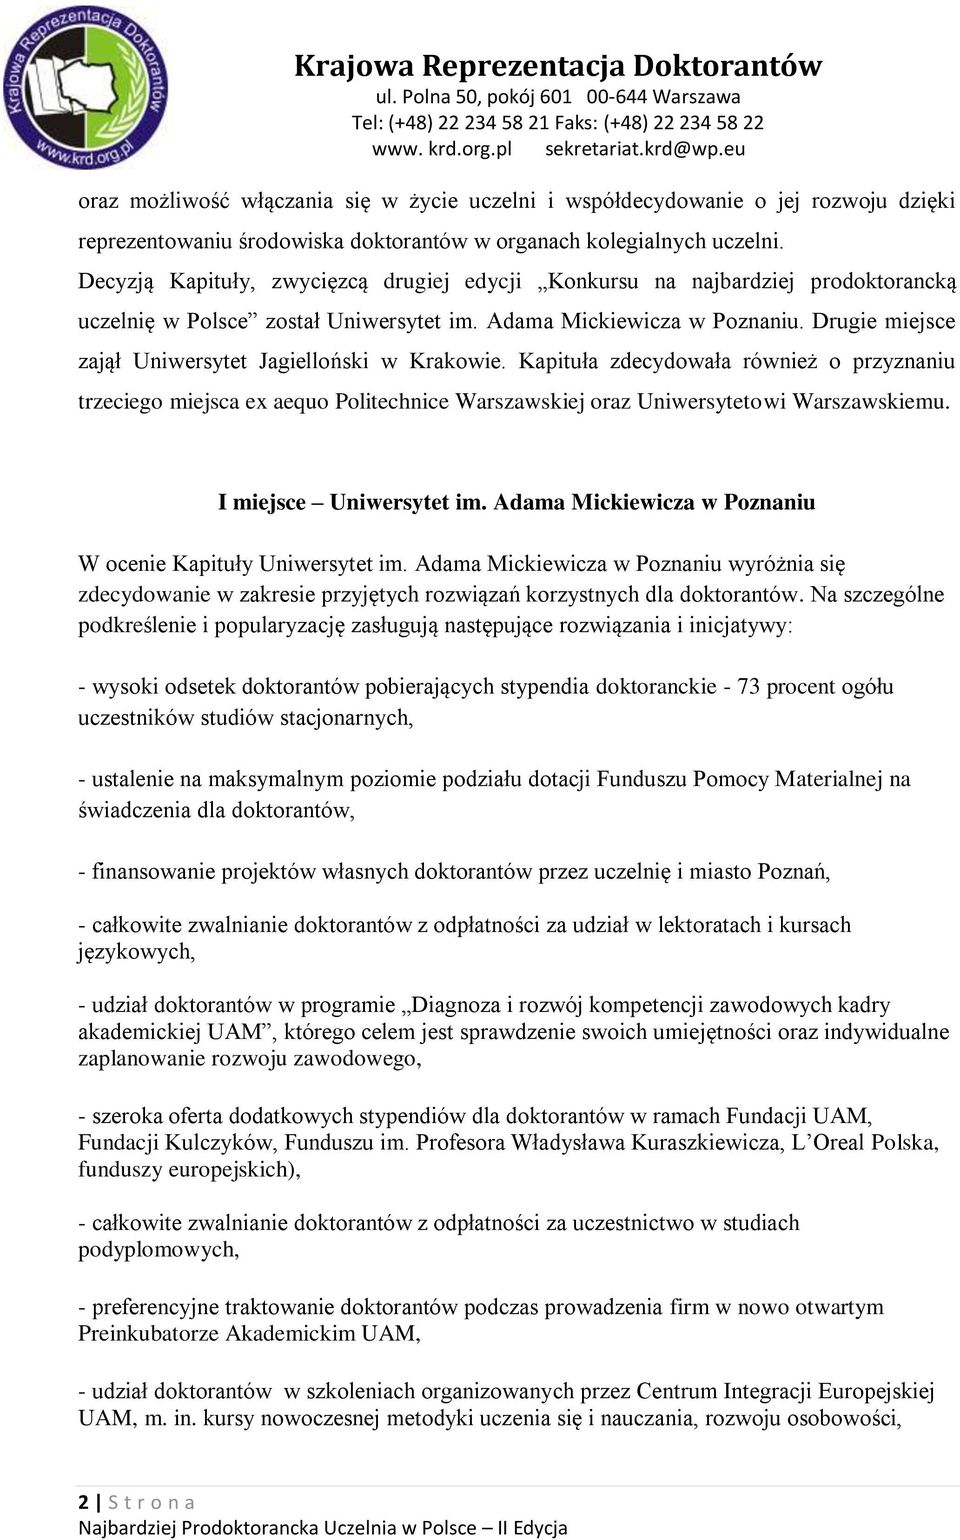 Drugie miejsce zajął Uniwersytet Jagielloński w Krakowie. Kapituła zdecydowała również o przyznaniu trzeciego miejsca ex aequo Politechnice Warszawskiej oraz Uniwersytetowi Warszawskiemu.